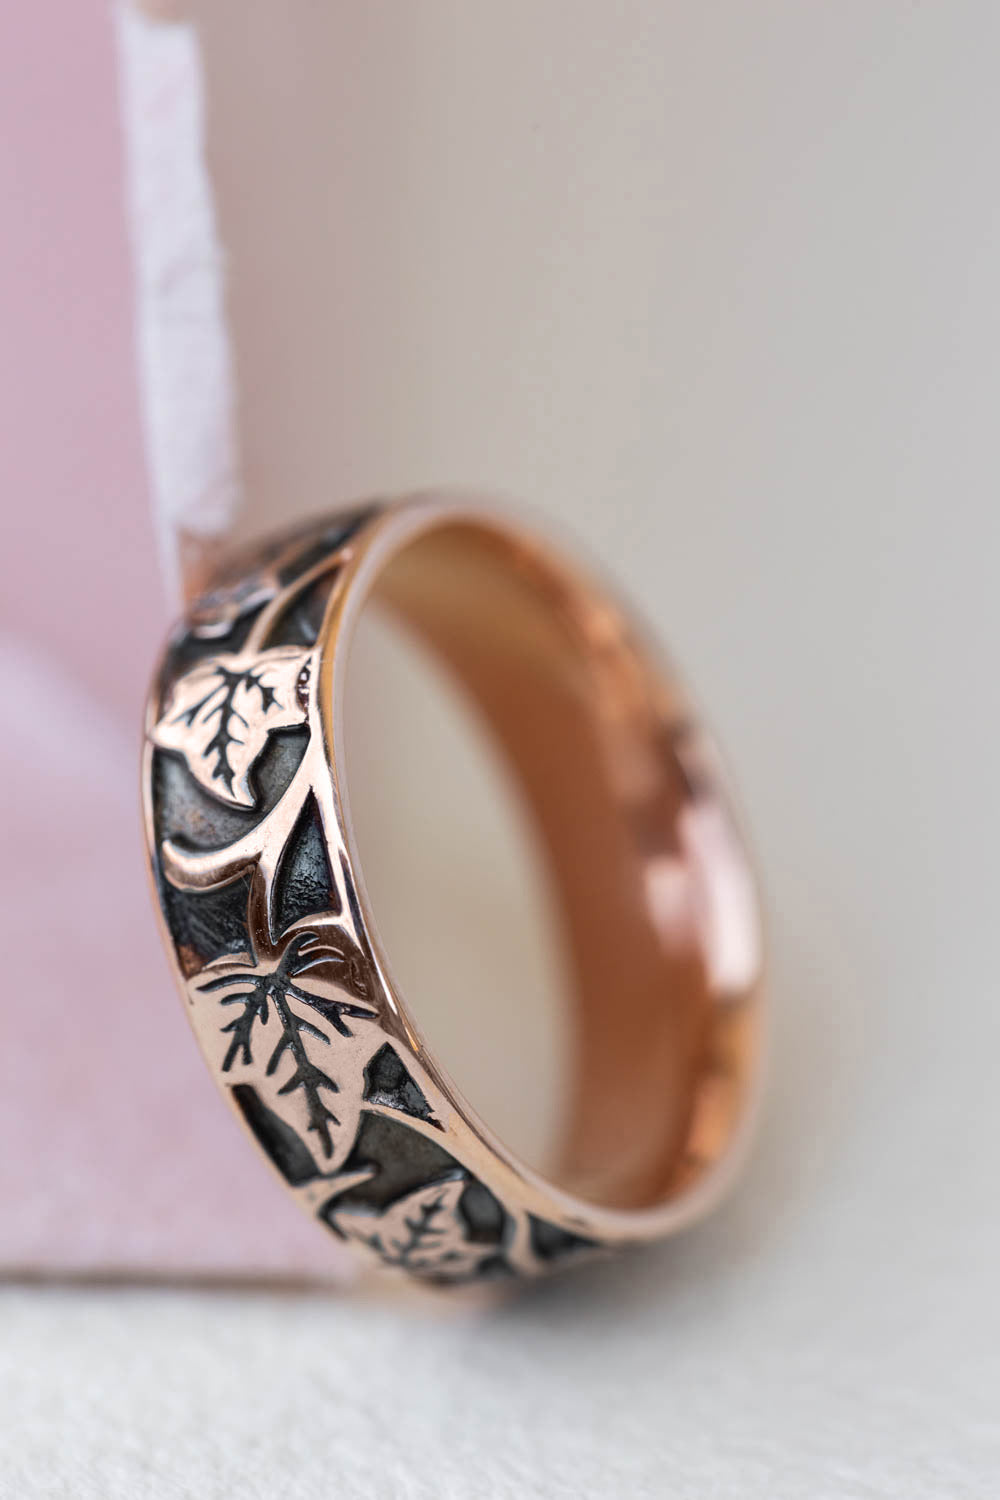 Entrancing Leaf Pattern Gold Finger Ring